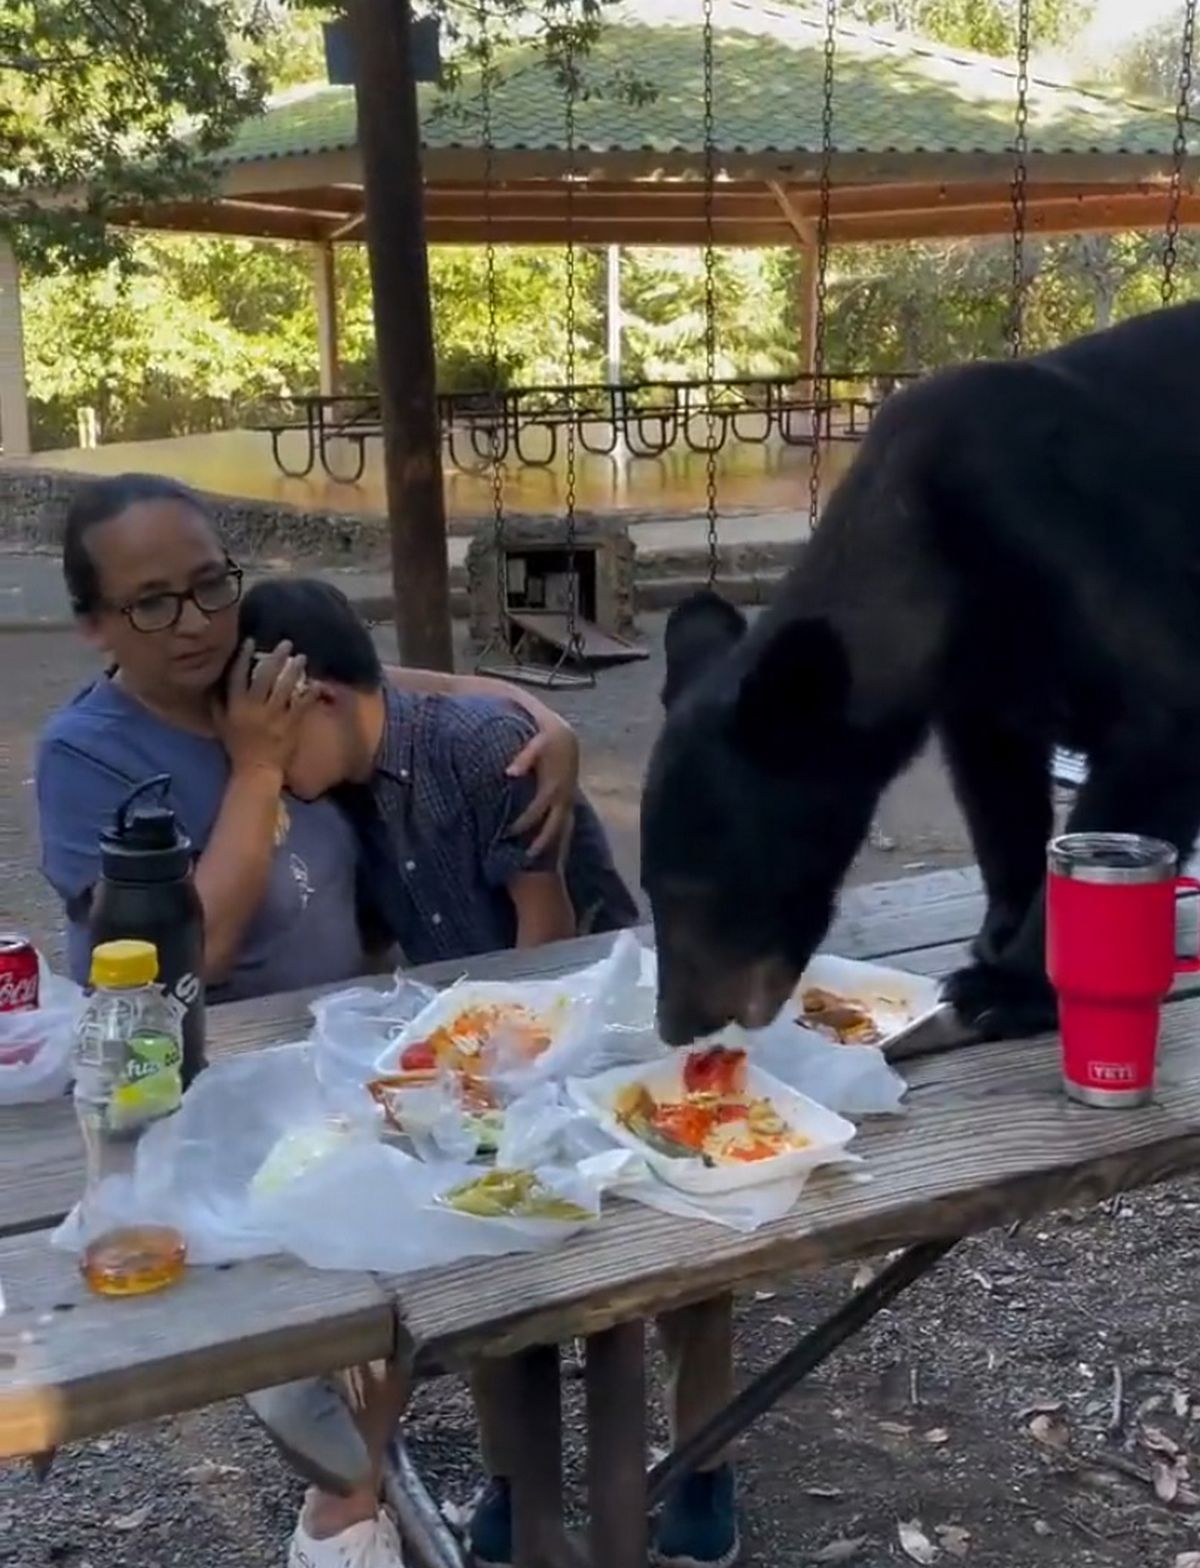 L'ours a mangé des enchiladas et des tacos à proximité de la famille terrifiée qui se trouvait à la table de pique-nique.